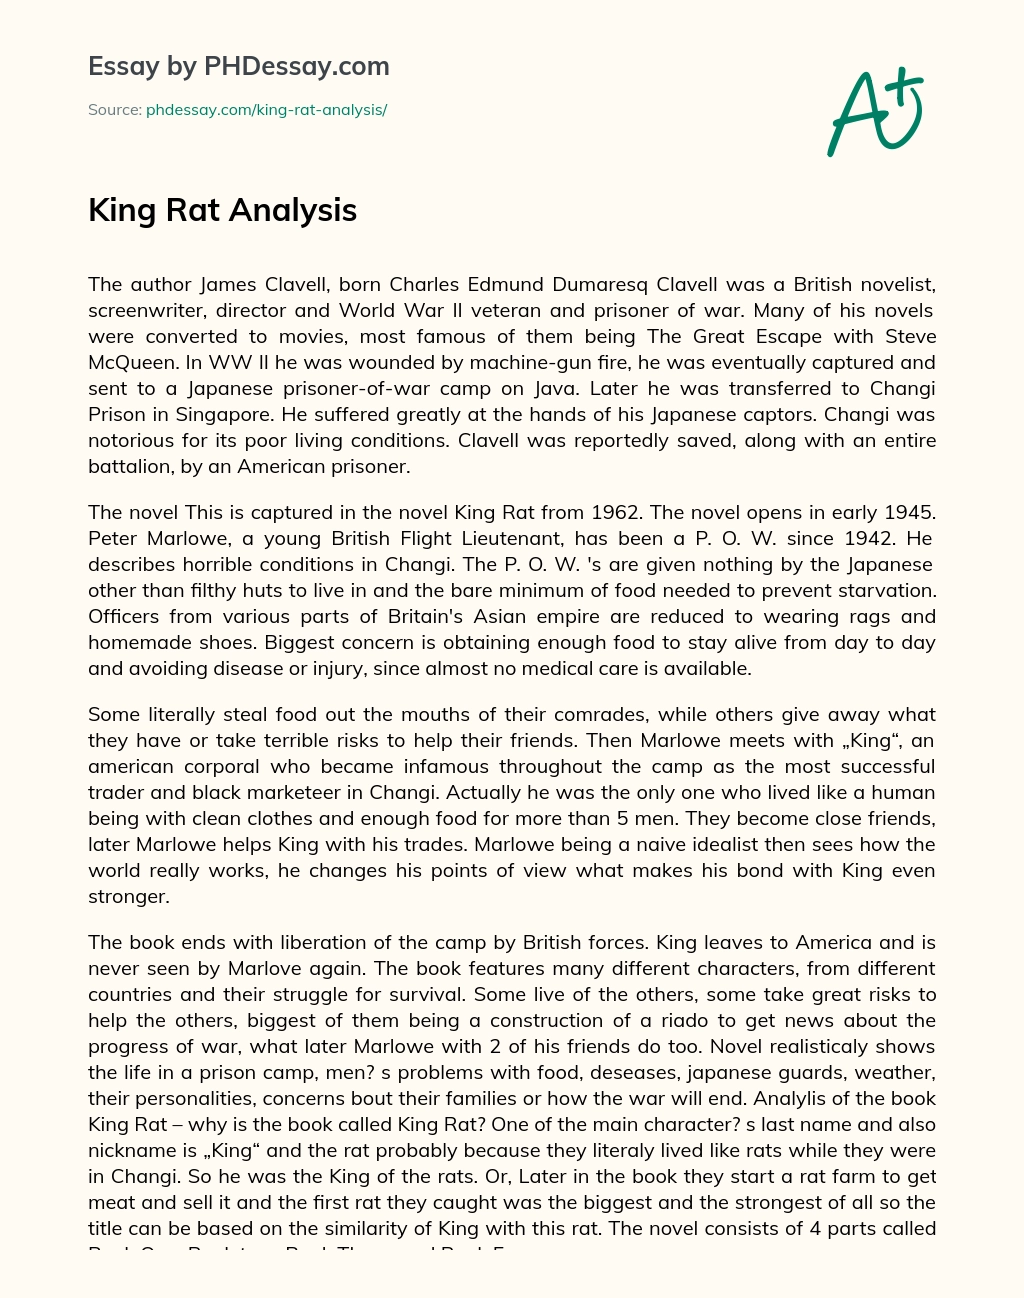 King Rat Analysis essay